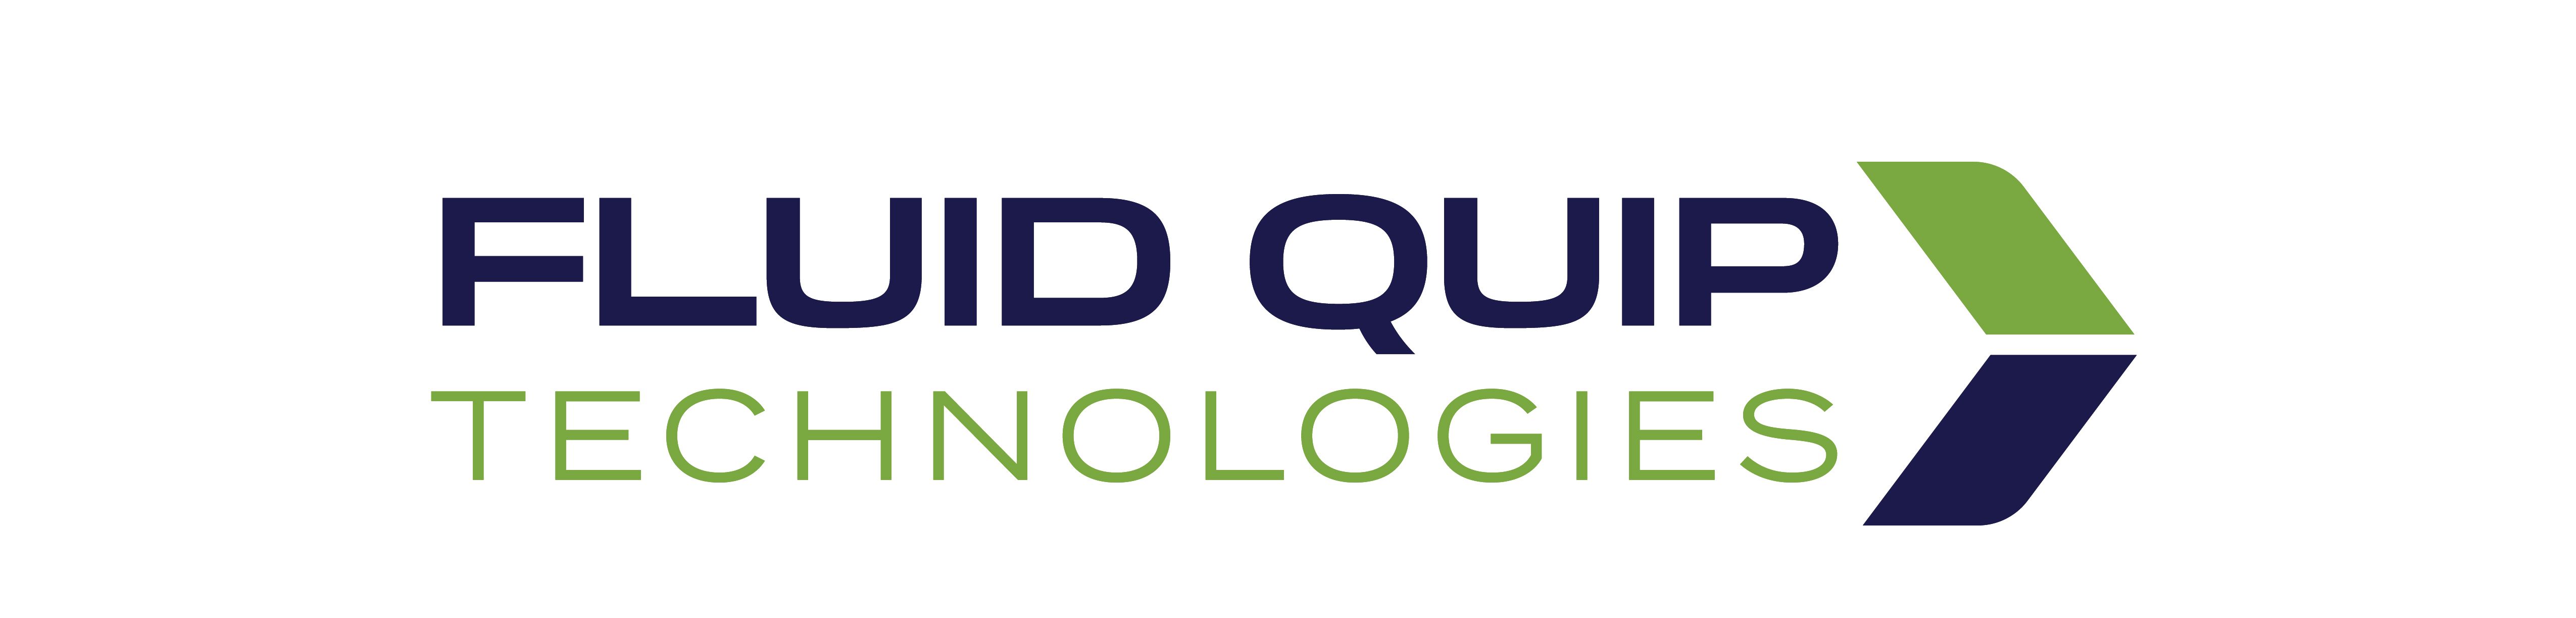 Fluid Quip Technologies, LLC